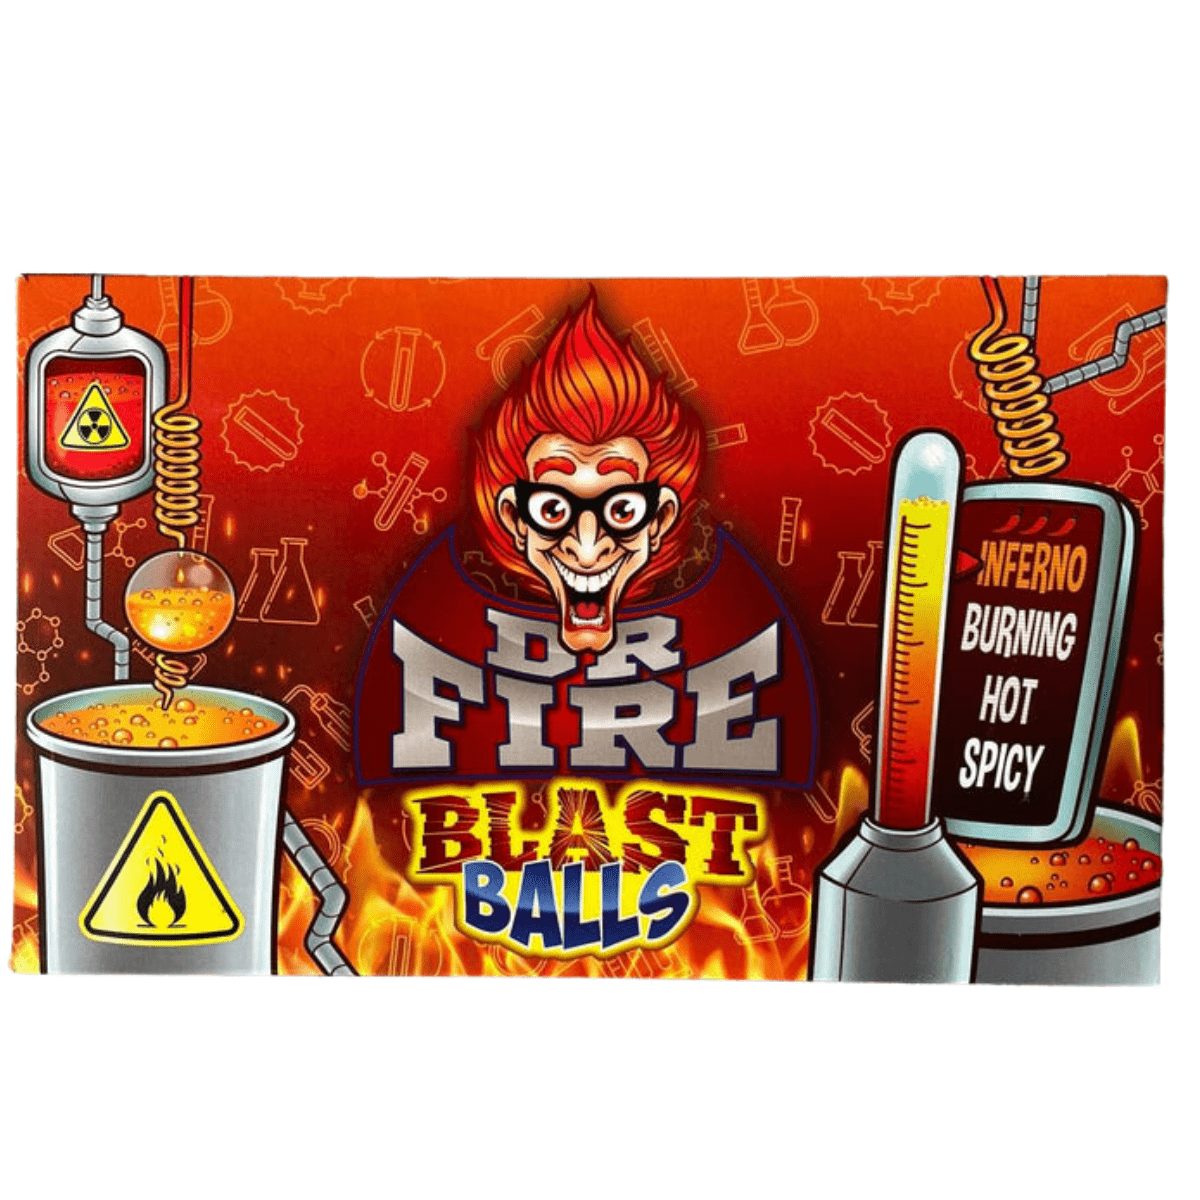 Dr. Fire Blast Balls Theatre Box (DATOVARE 20/12)